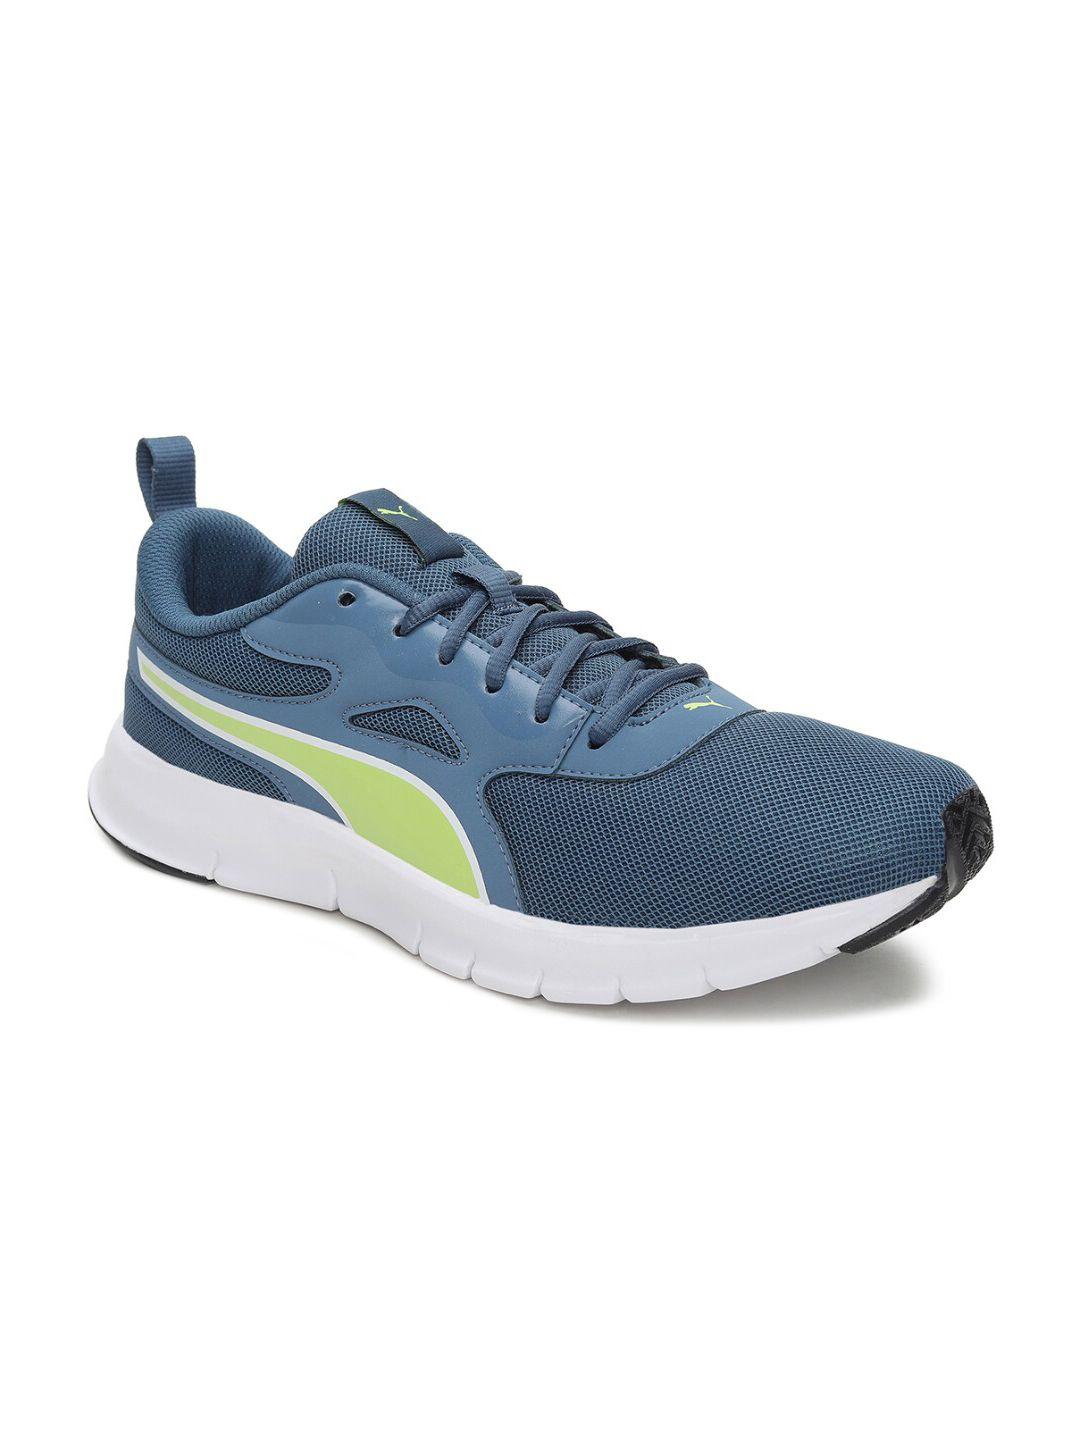 Puma Men Blue & Fluorescent Green Mesh Running Shoes